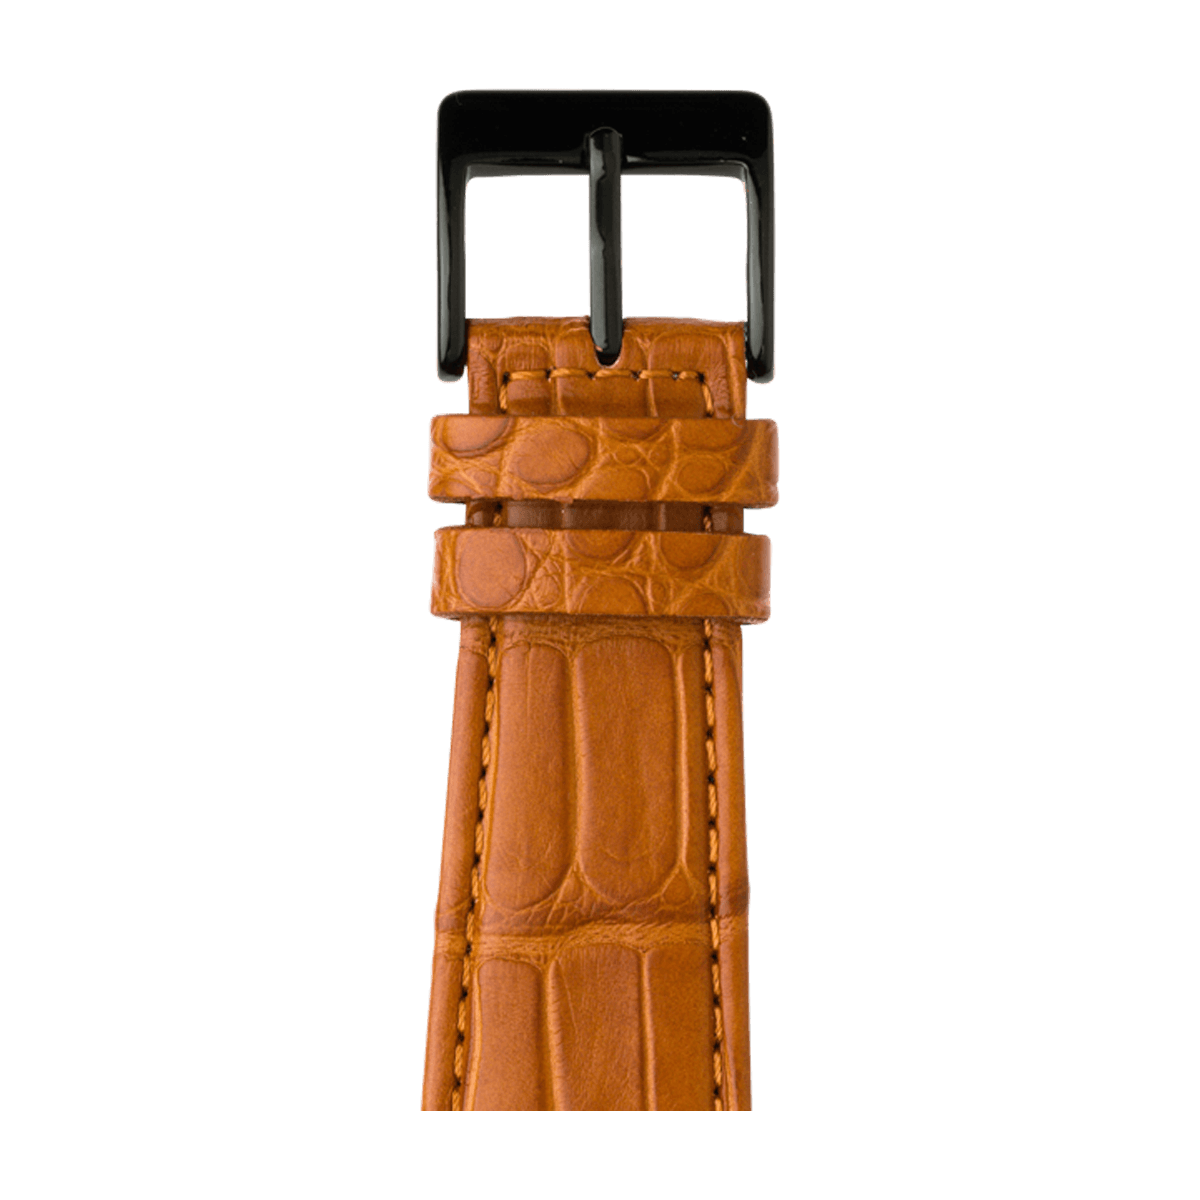 Alligator Leder Armband in Cognac - bracebuds